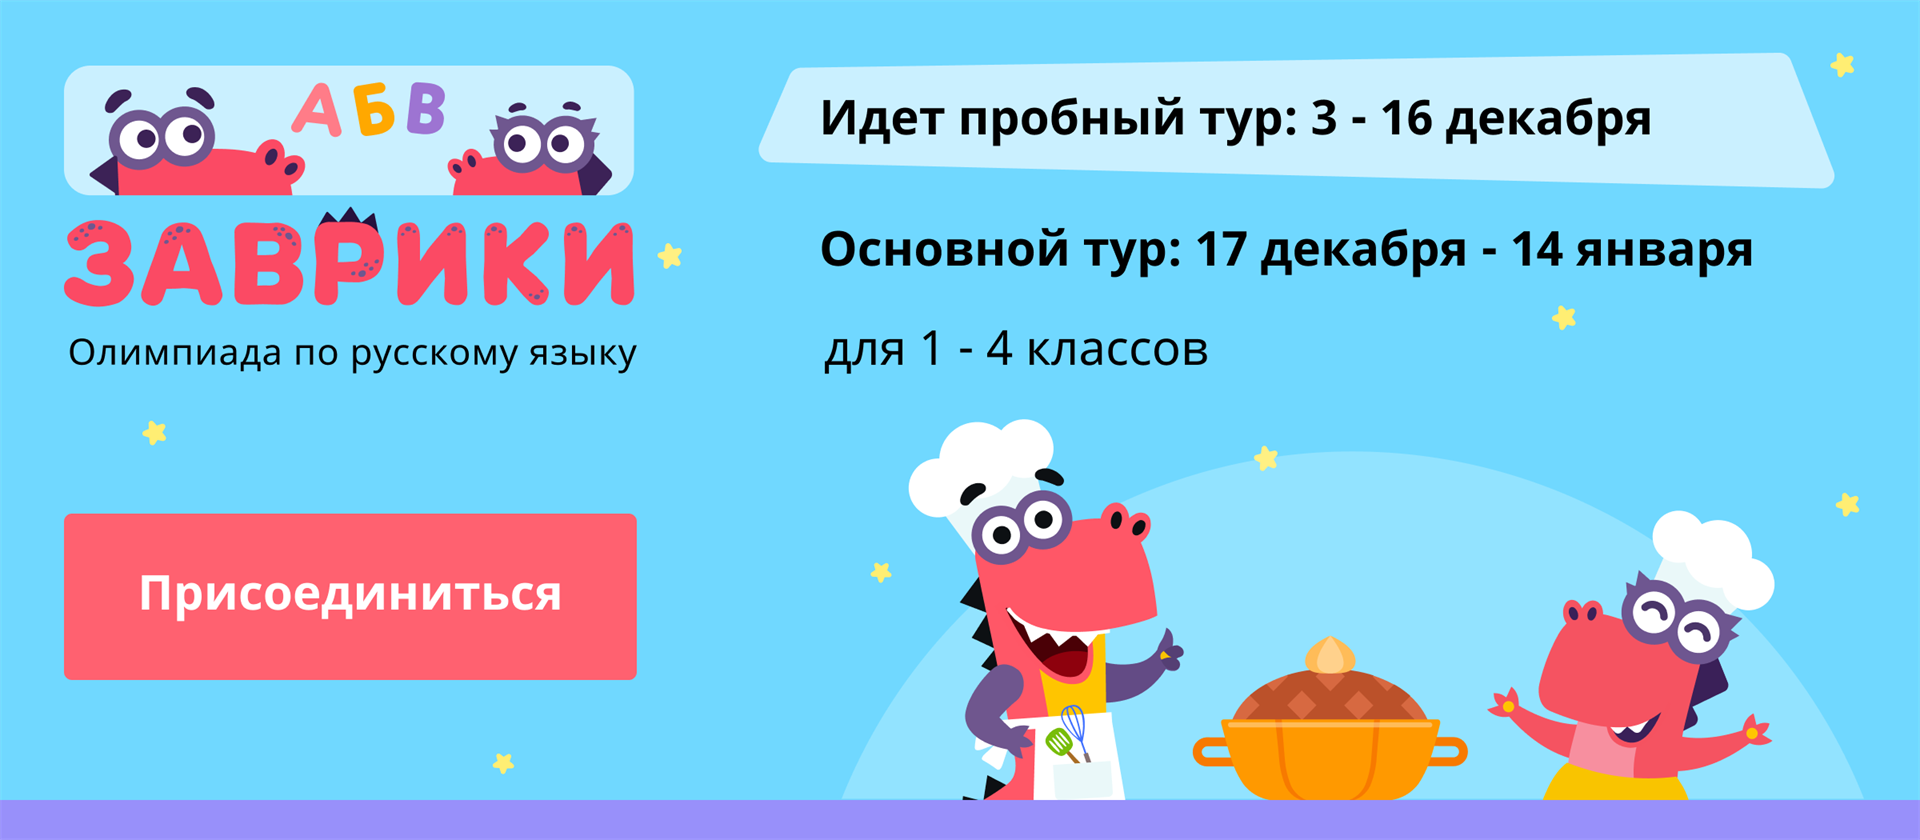 Учи ру. Основной тур. Пробный тур. Учи ру русский язык.